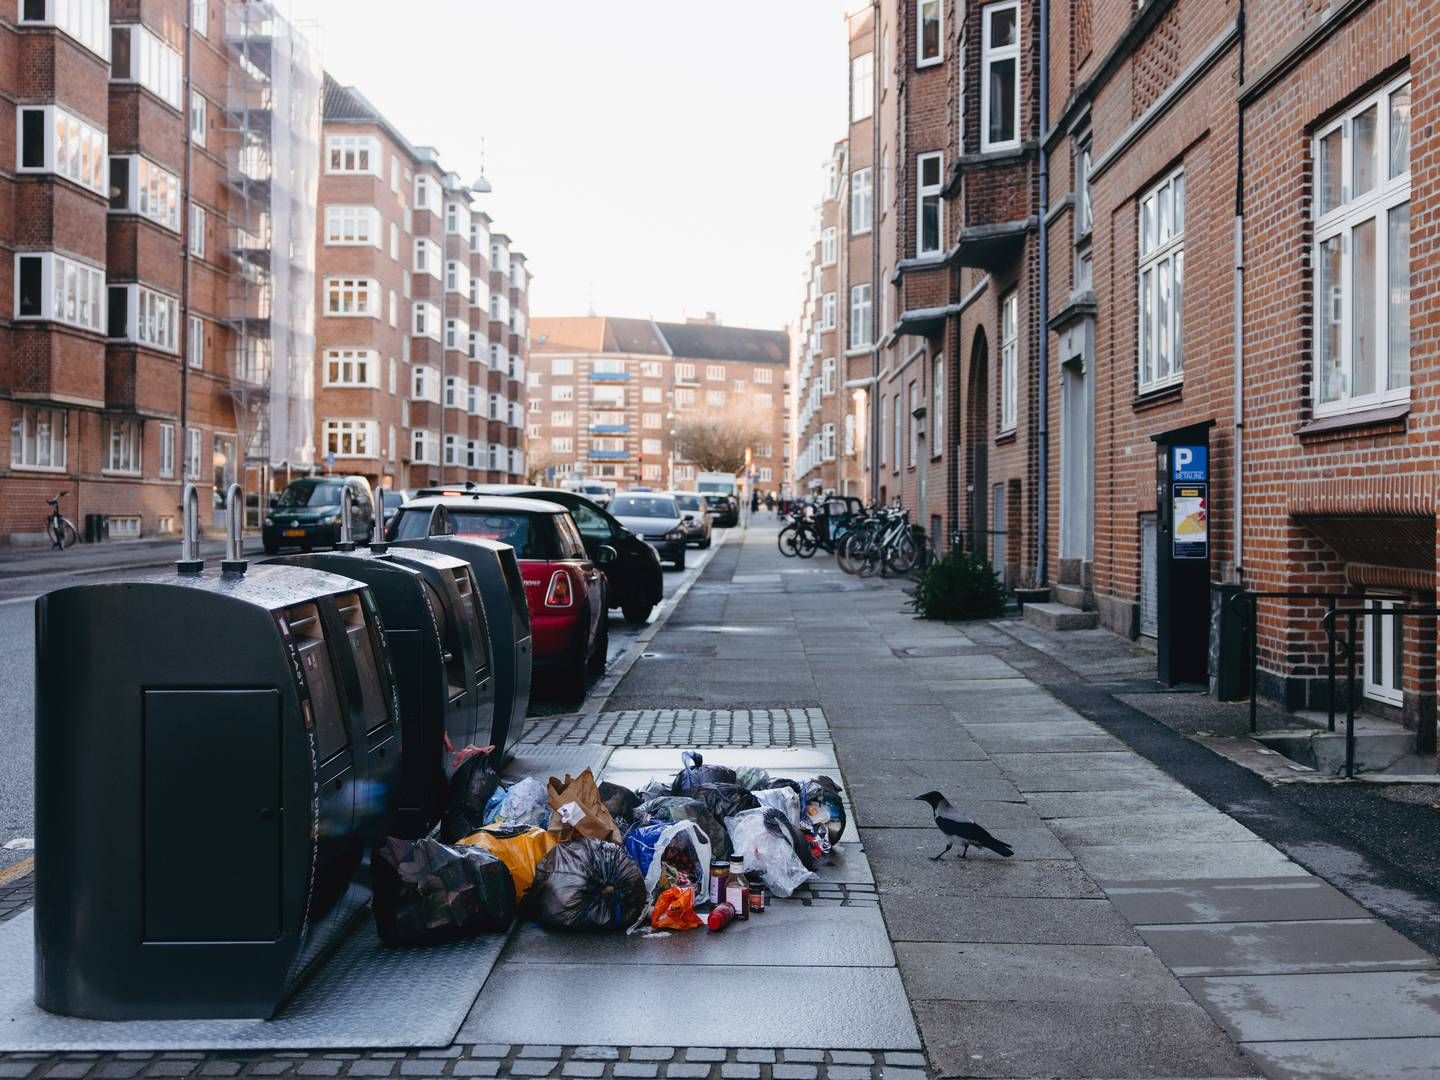 Affald havde siden julemåneden hobet sig op i Aarhus efter manglende tømning. | Foto: Emilie Toldam Futtrup